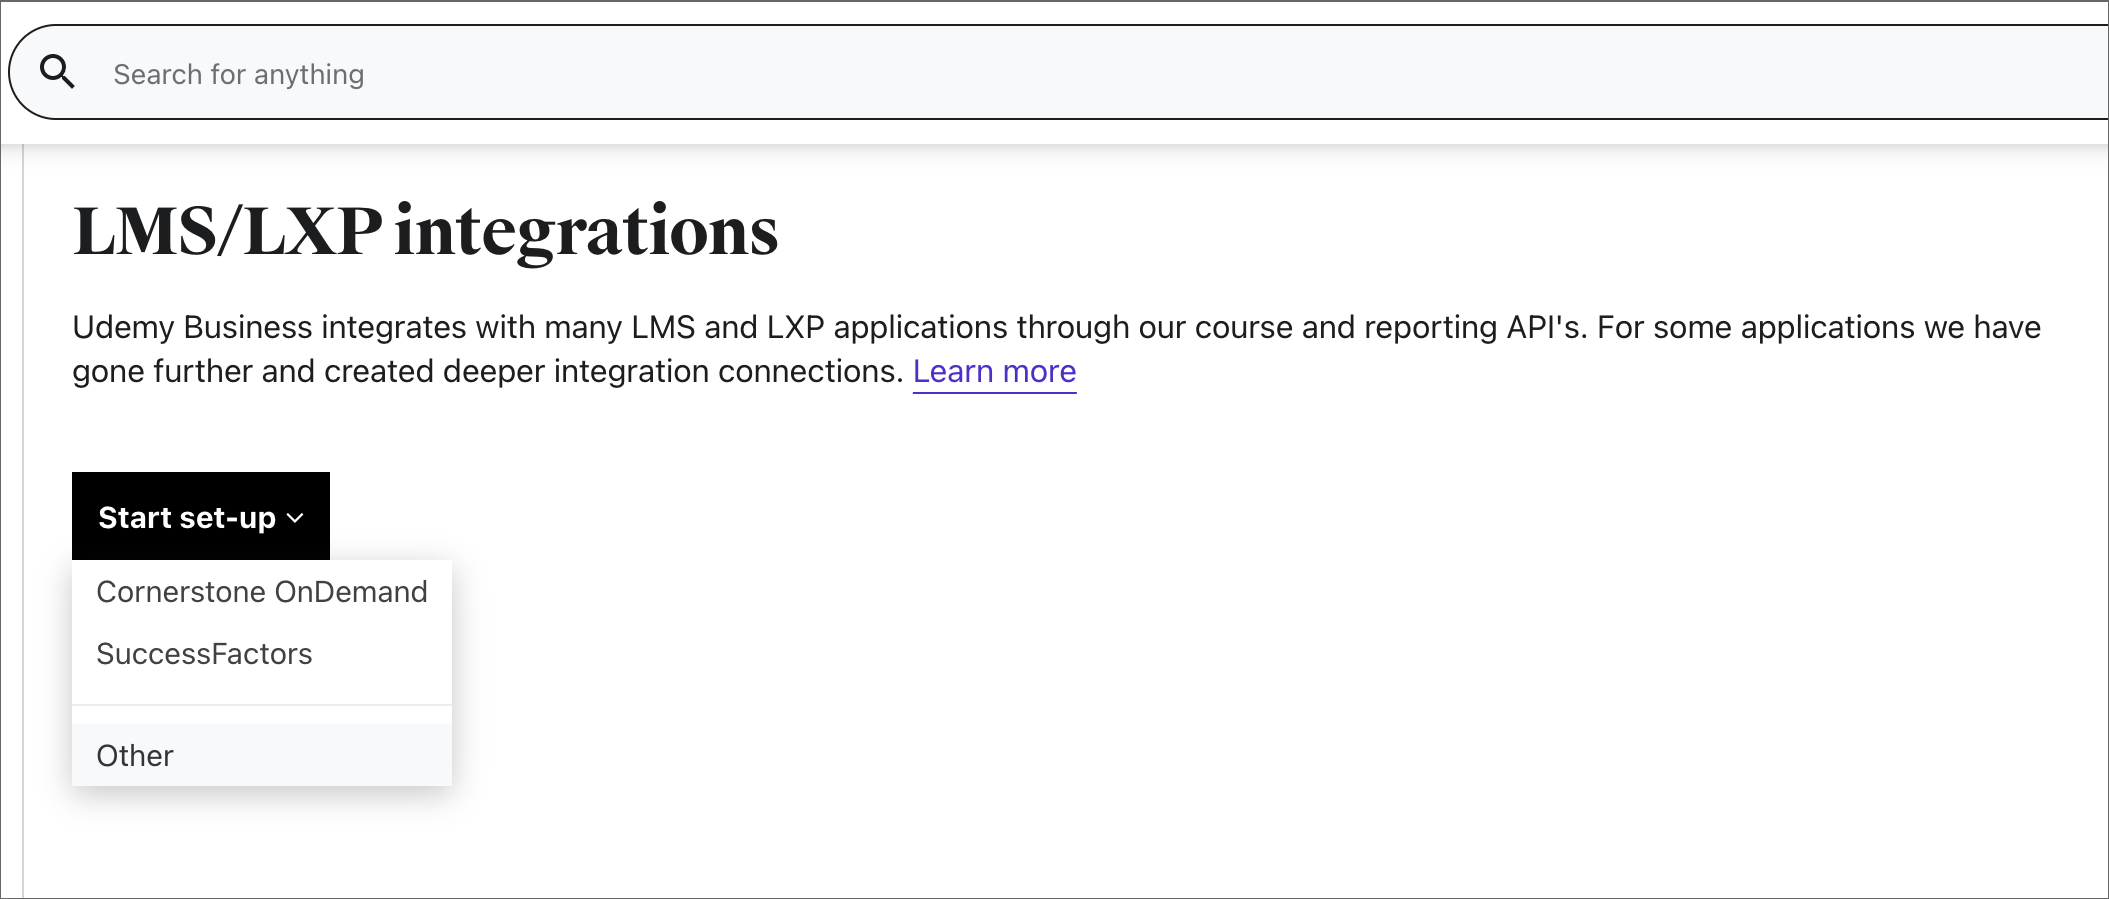 Изображение страницы параметров интеграции LMS/LXP.